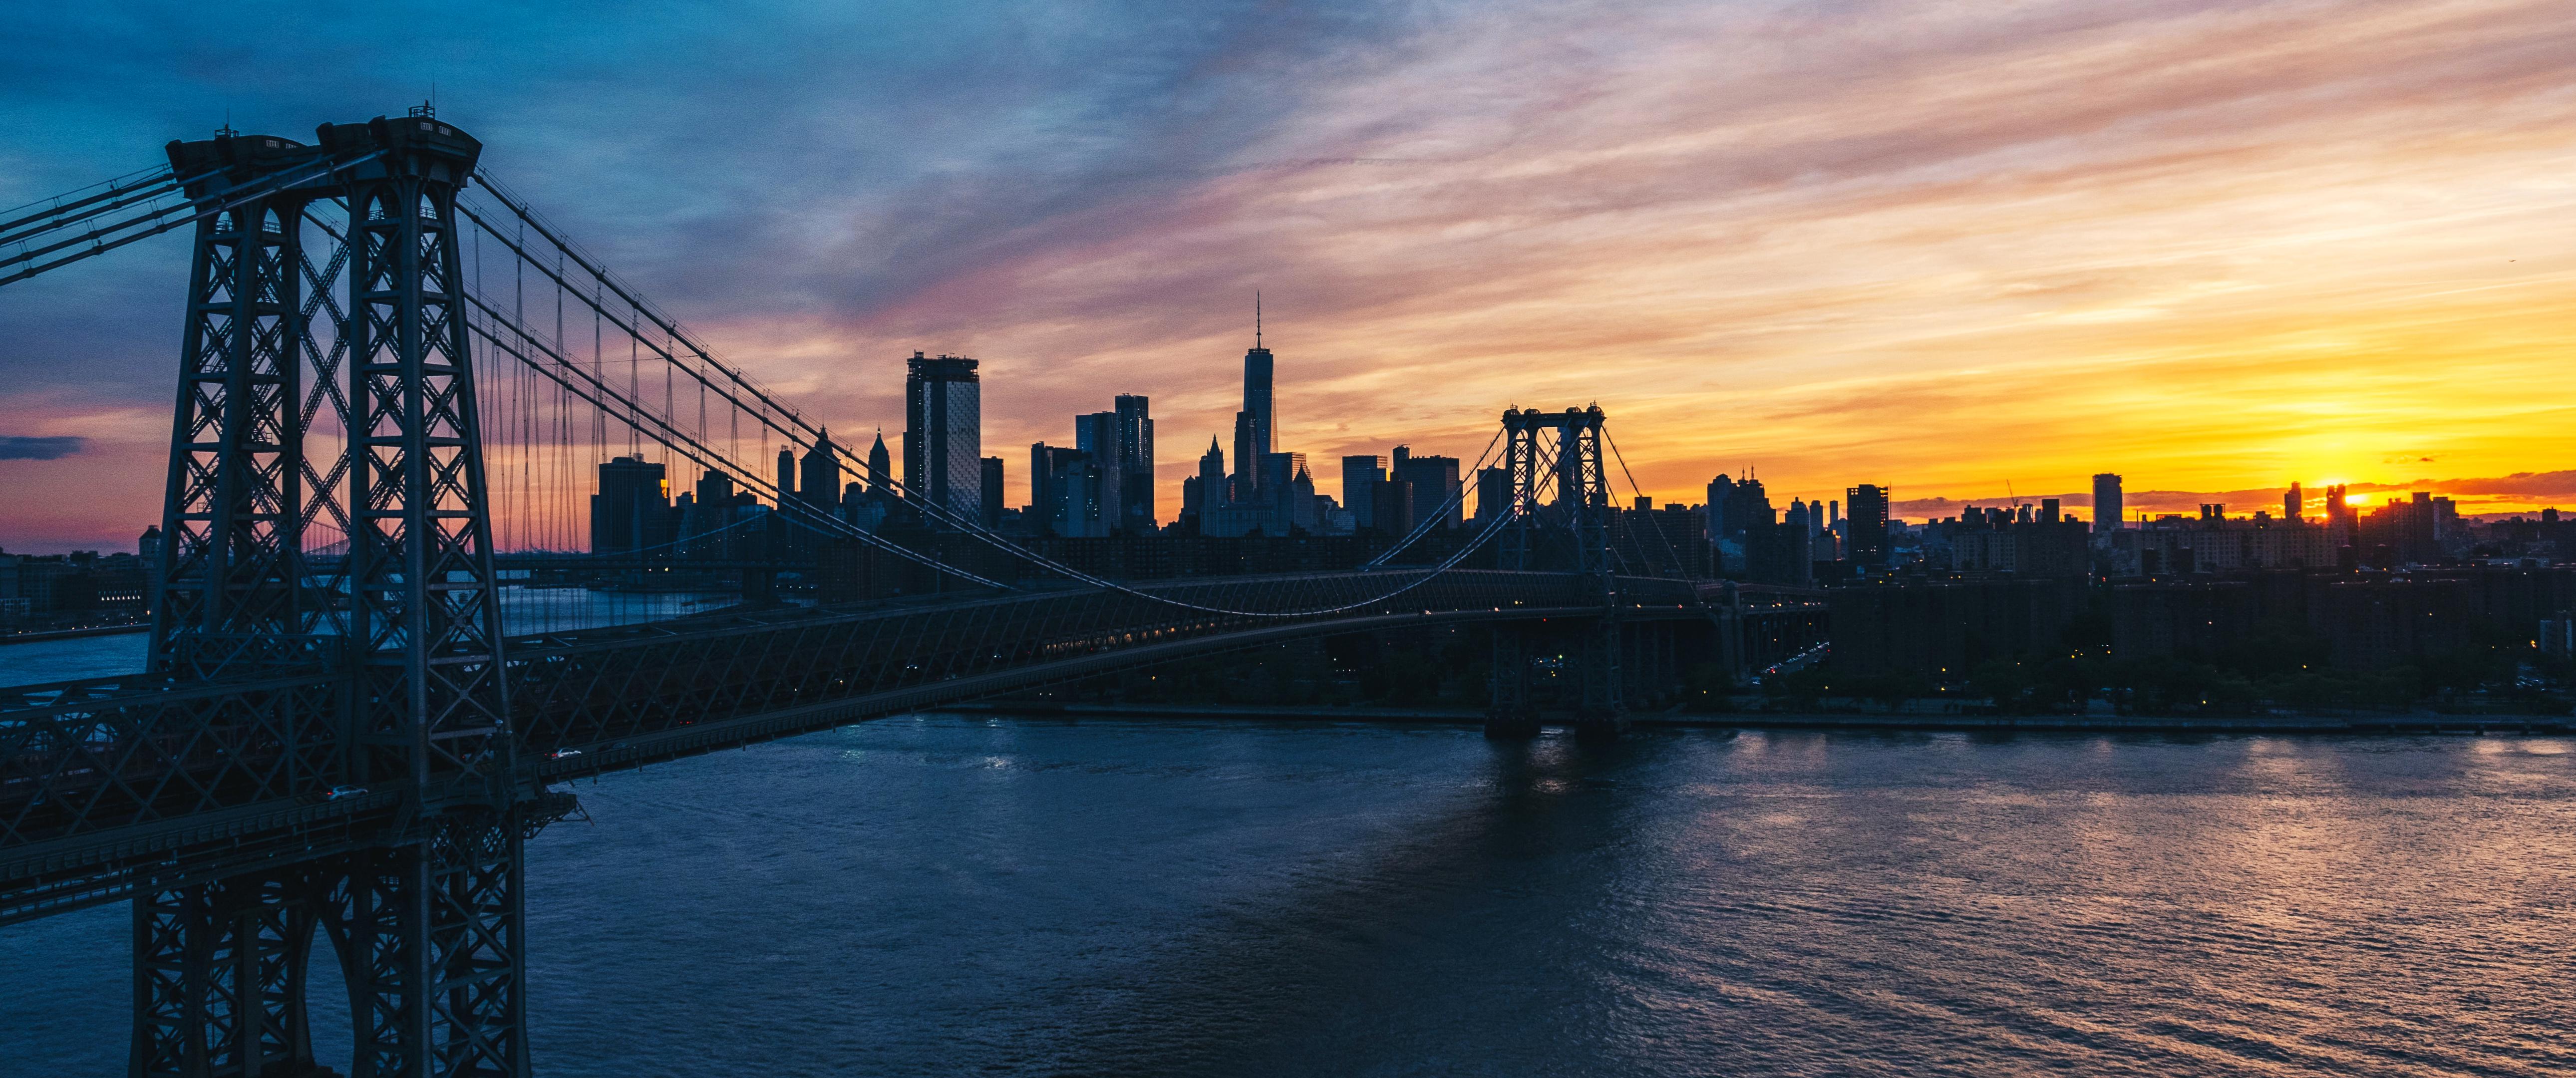 Bridge City New York City Manhattan Bridge Water Sunset Sunset Glow 5160x2160